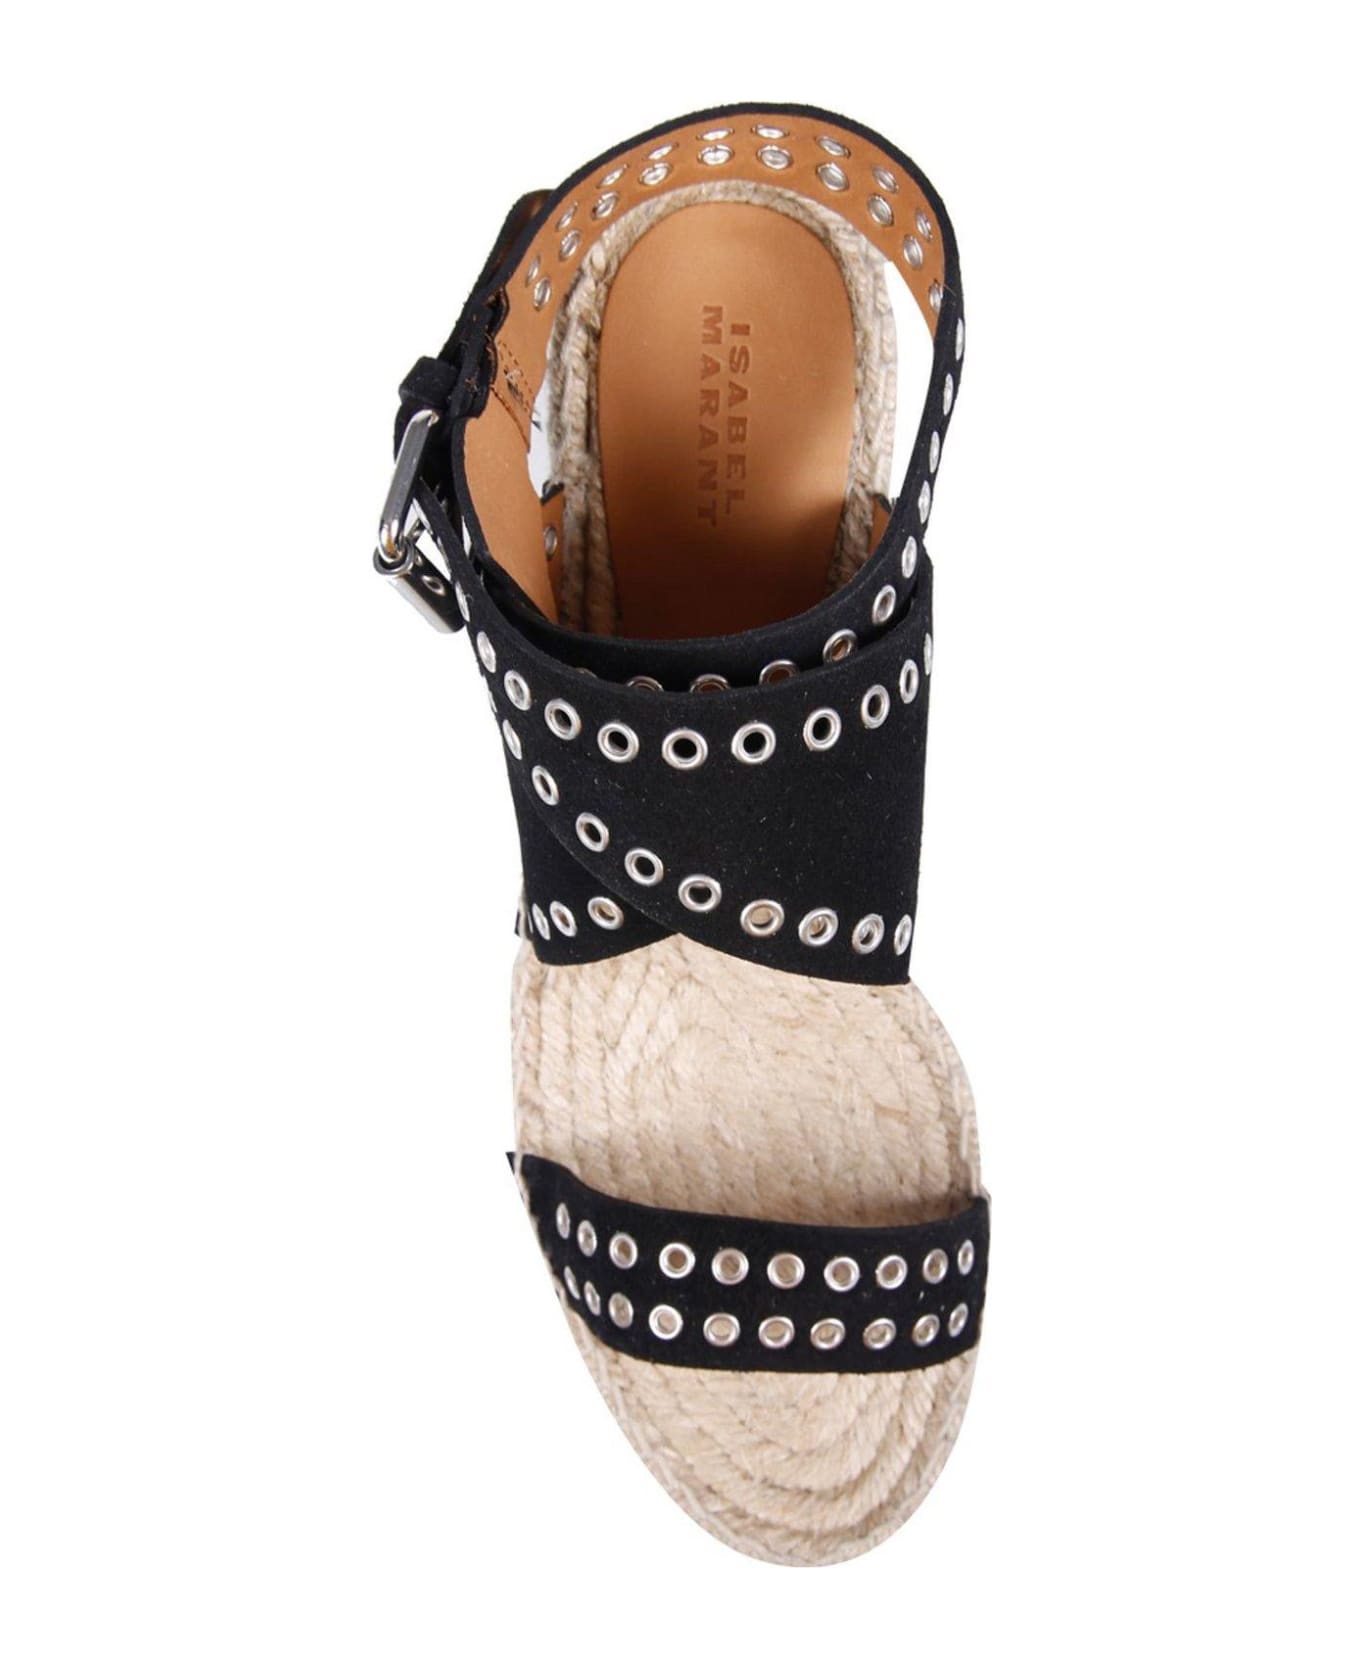 Isabel Marant Open Toe Platform Wedge Sandals - Black